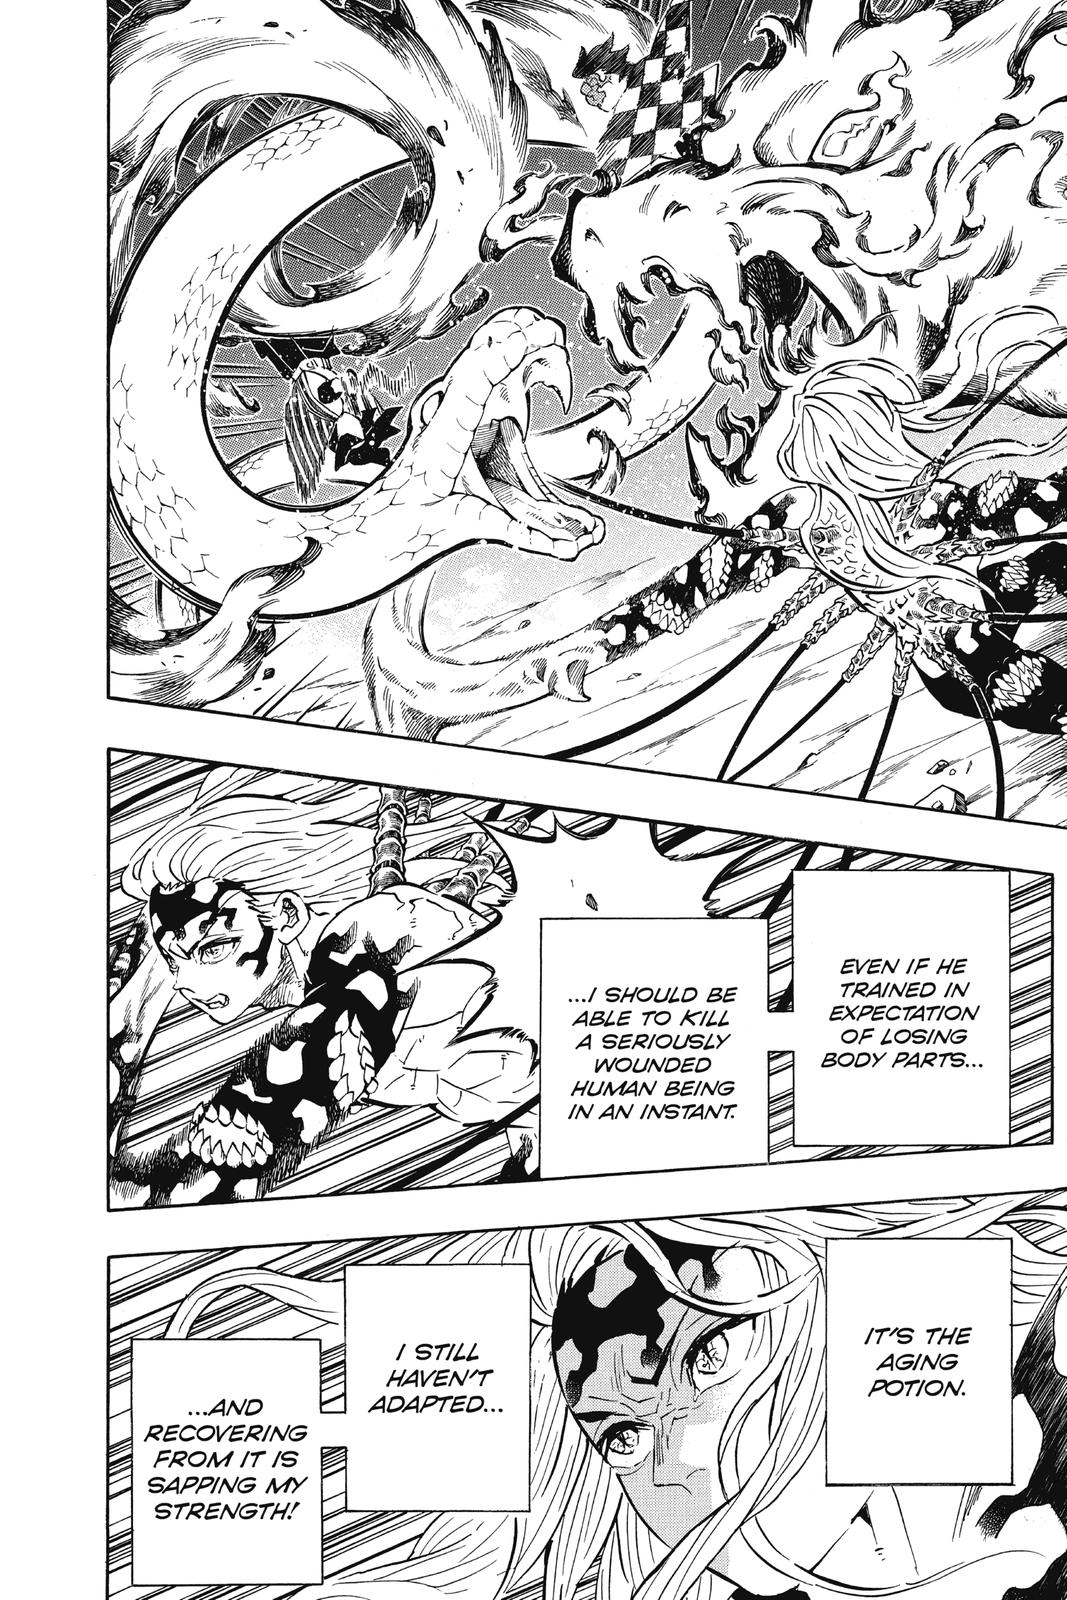 Demon Slayer Manga Manga Chapter - 194 - image 15